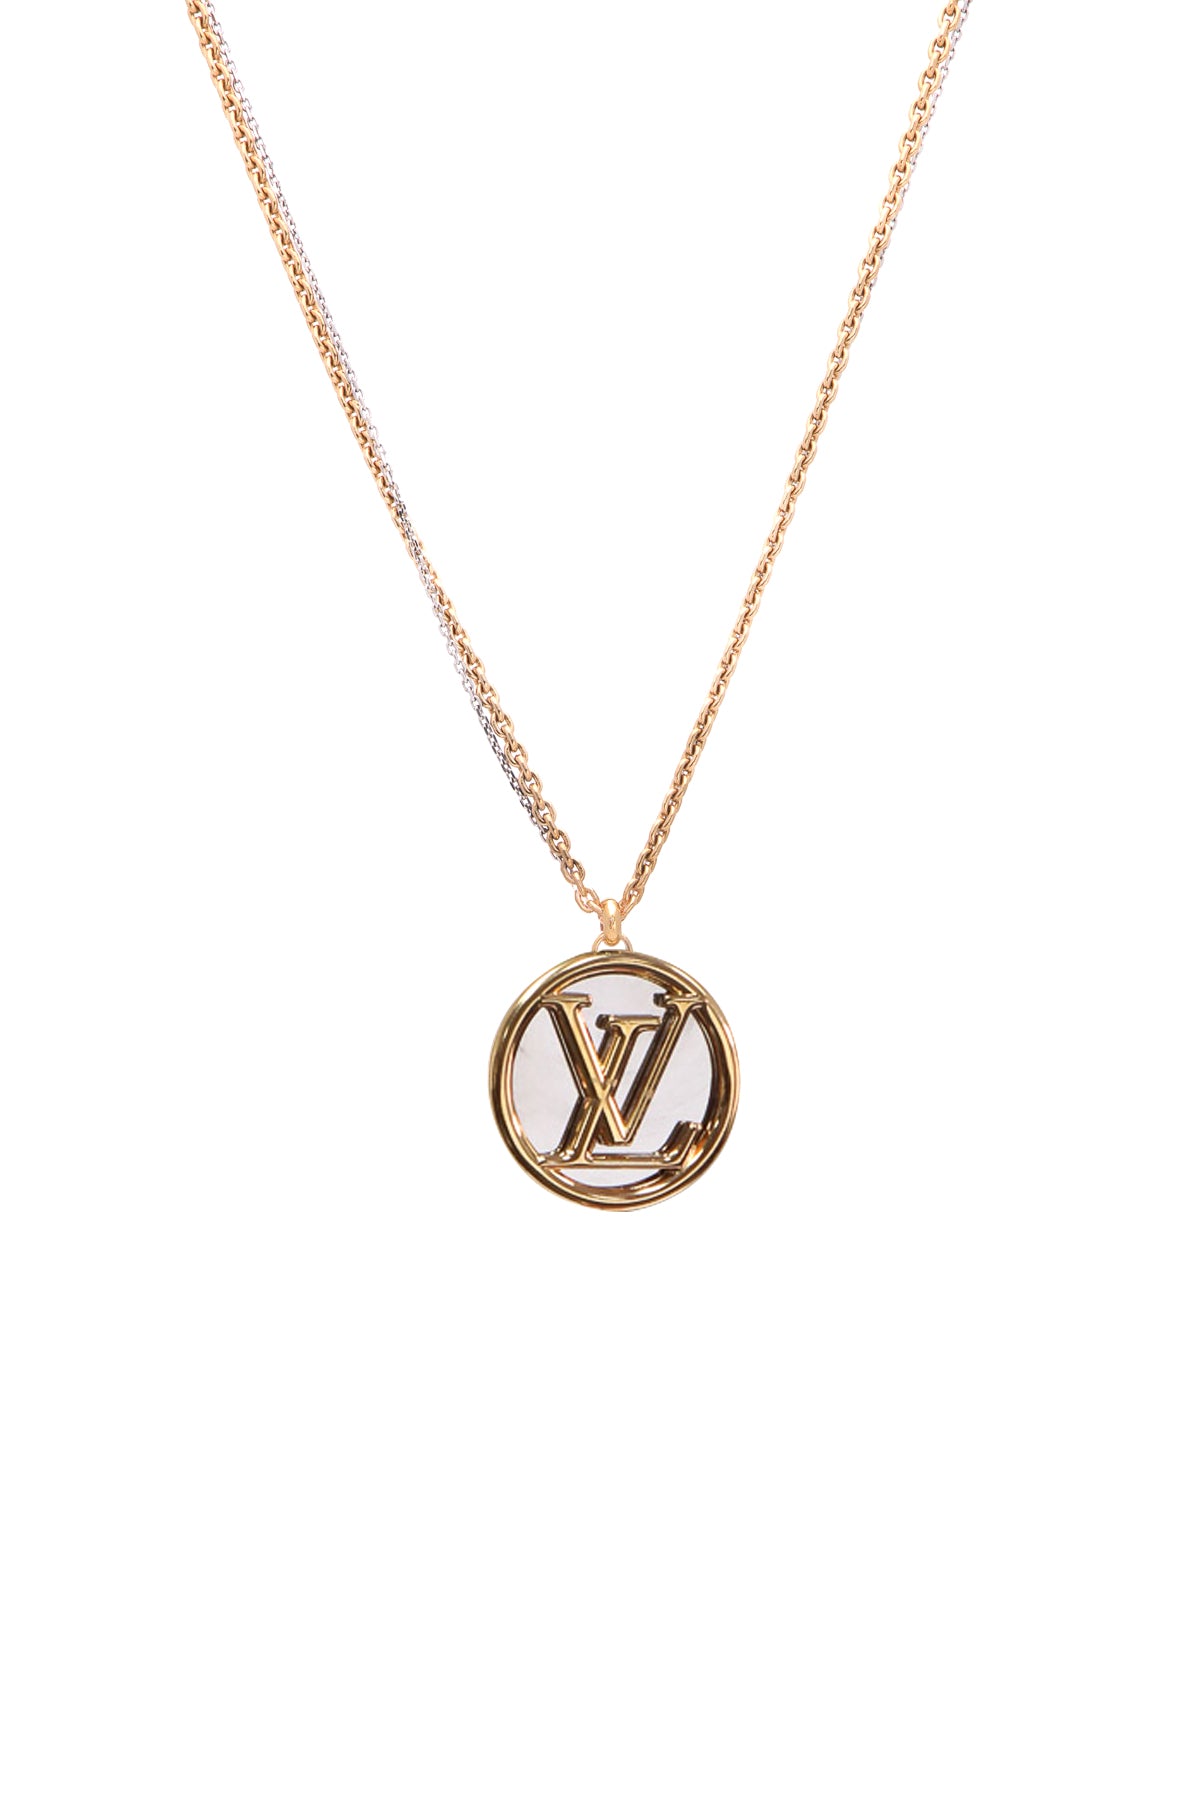 Louis Vuitton, Jewelry, Authentic Louis Vuitton Louise Long Necklace